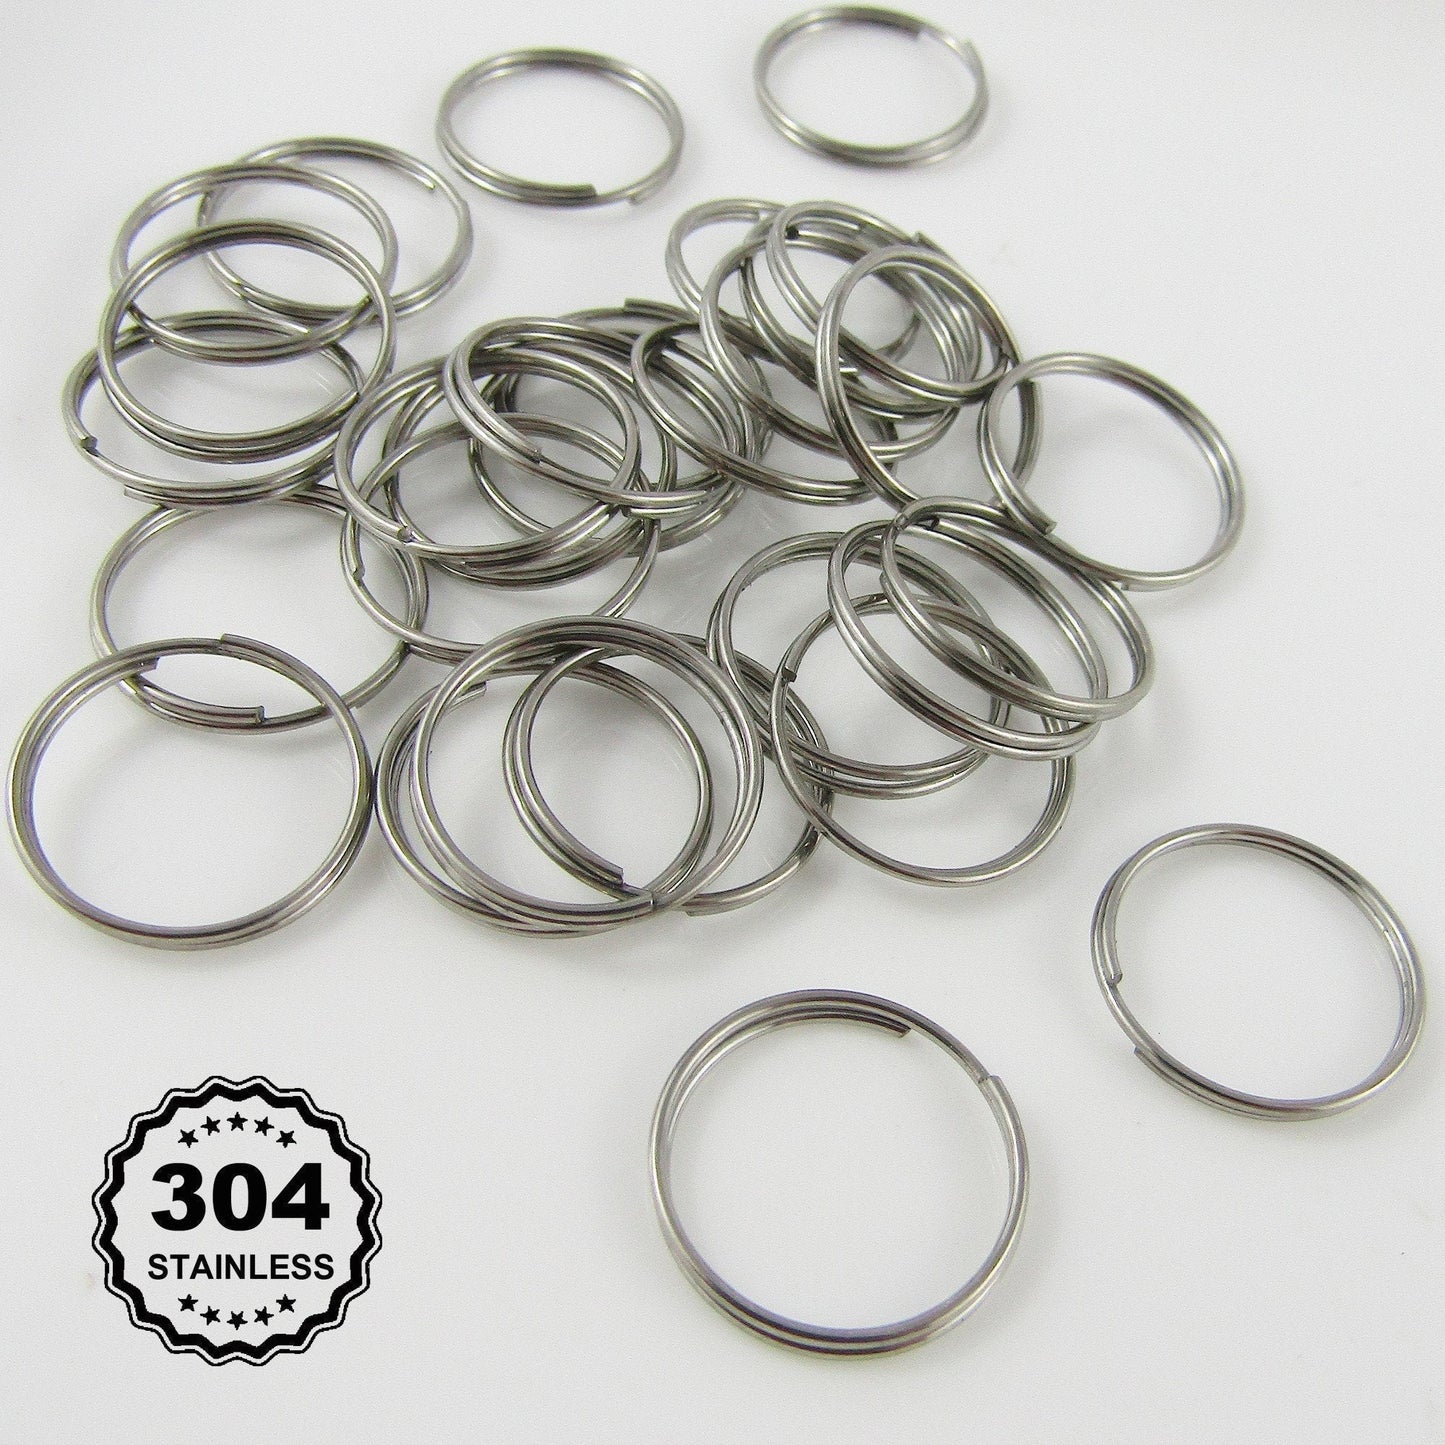 Bulk 80pcs Stainless Steel 14mm x 0.7mm Split Rings Findings Craft